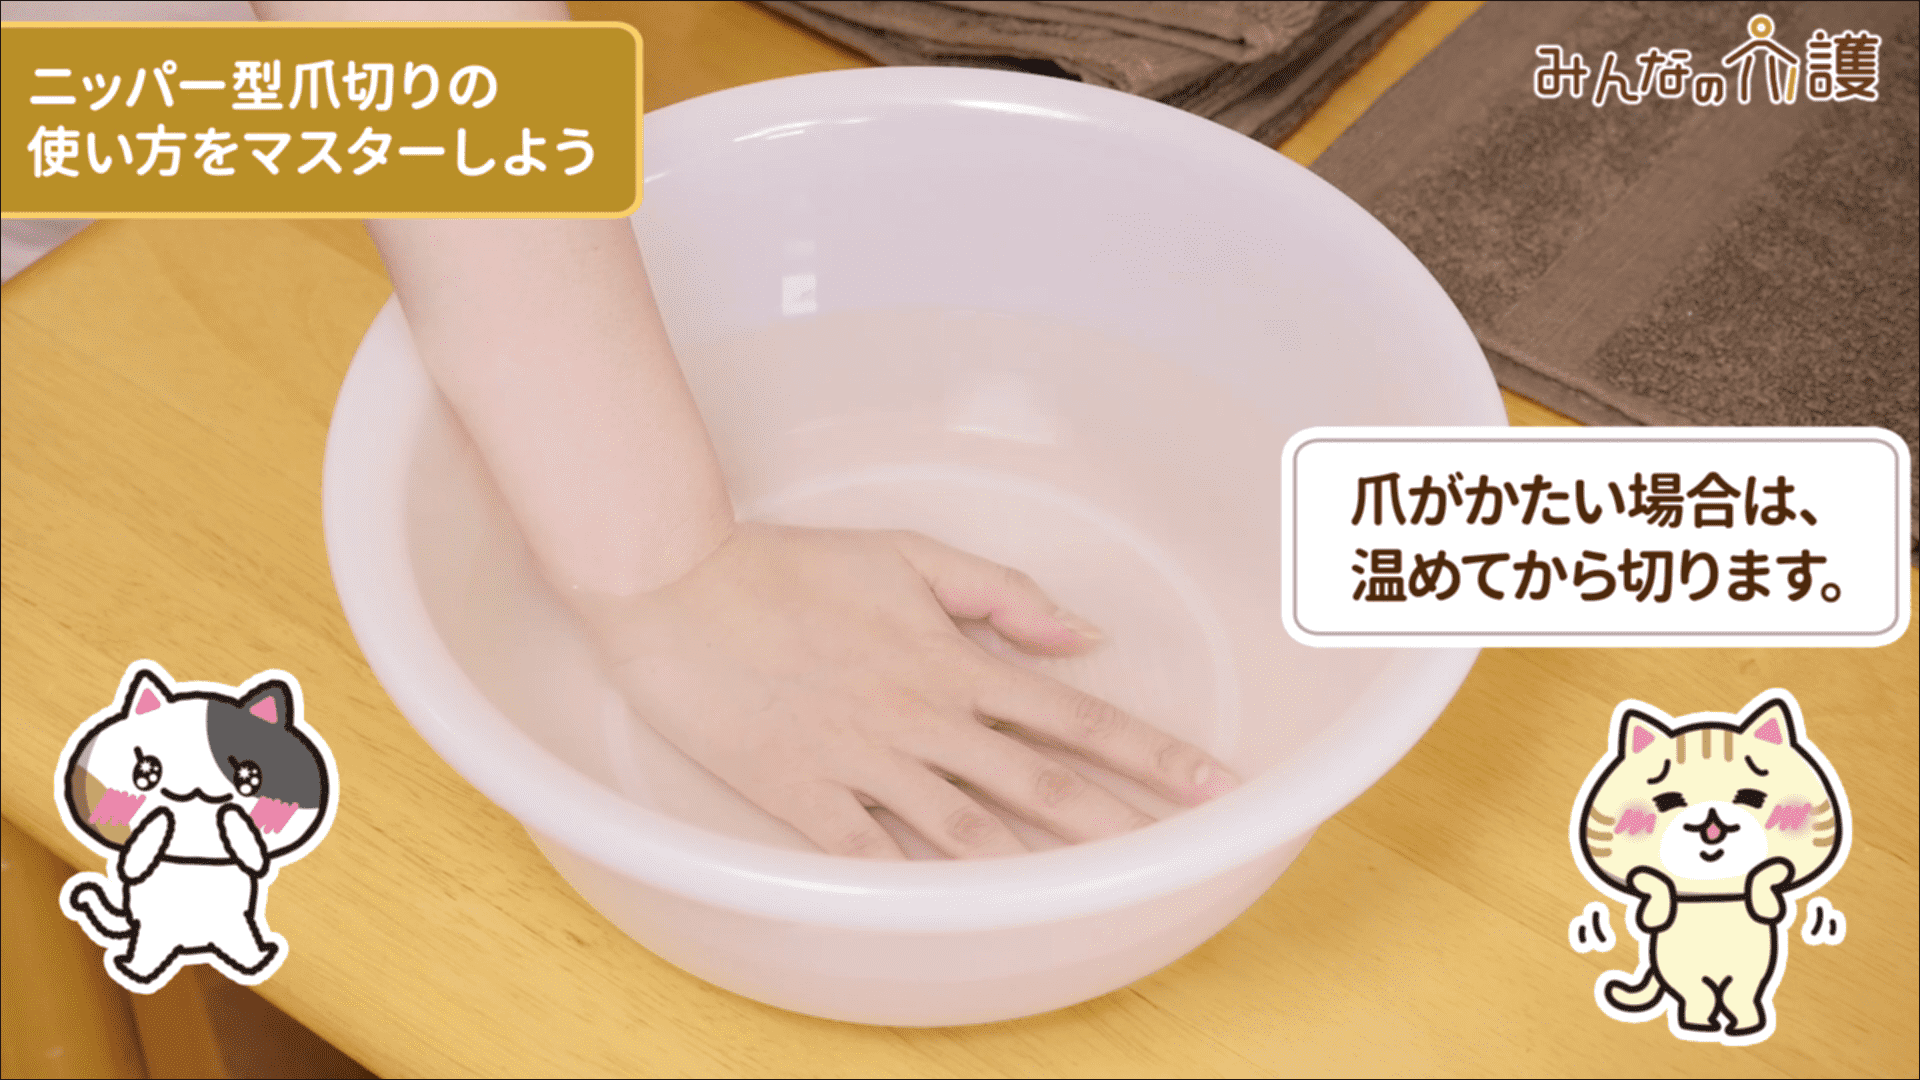 手浴のイメージ